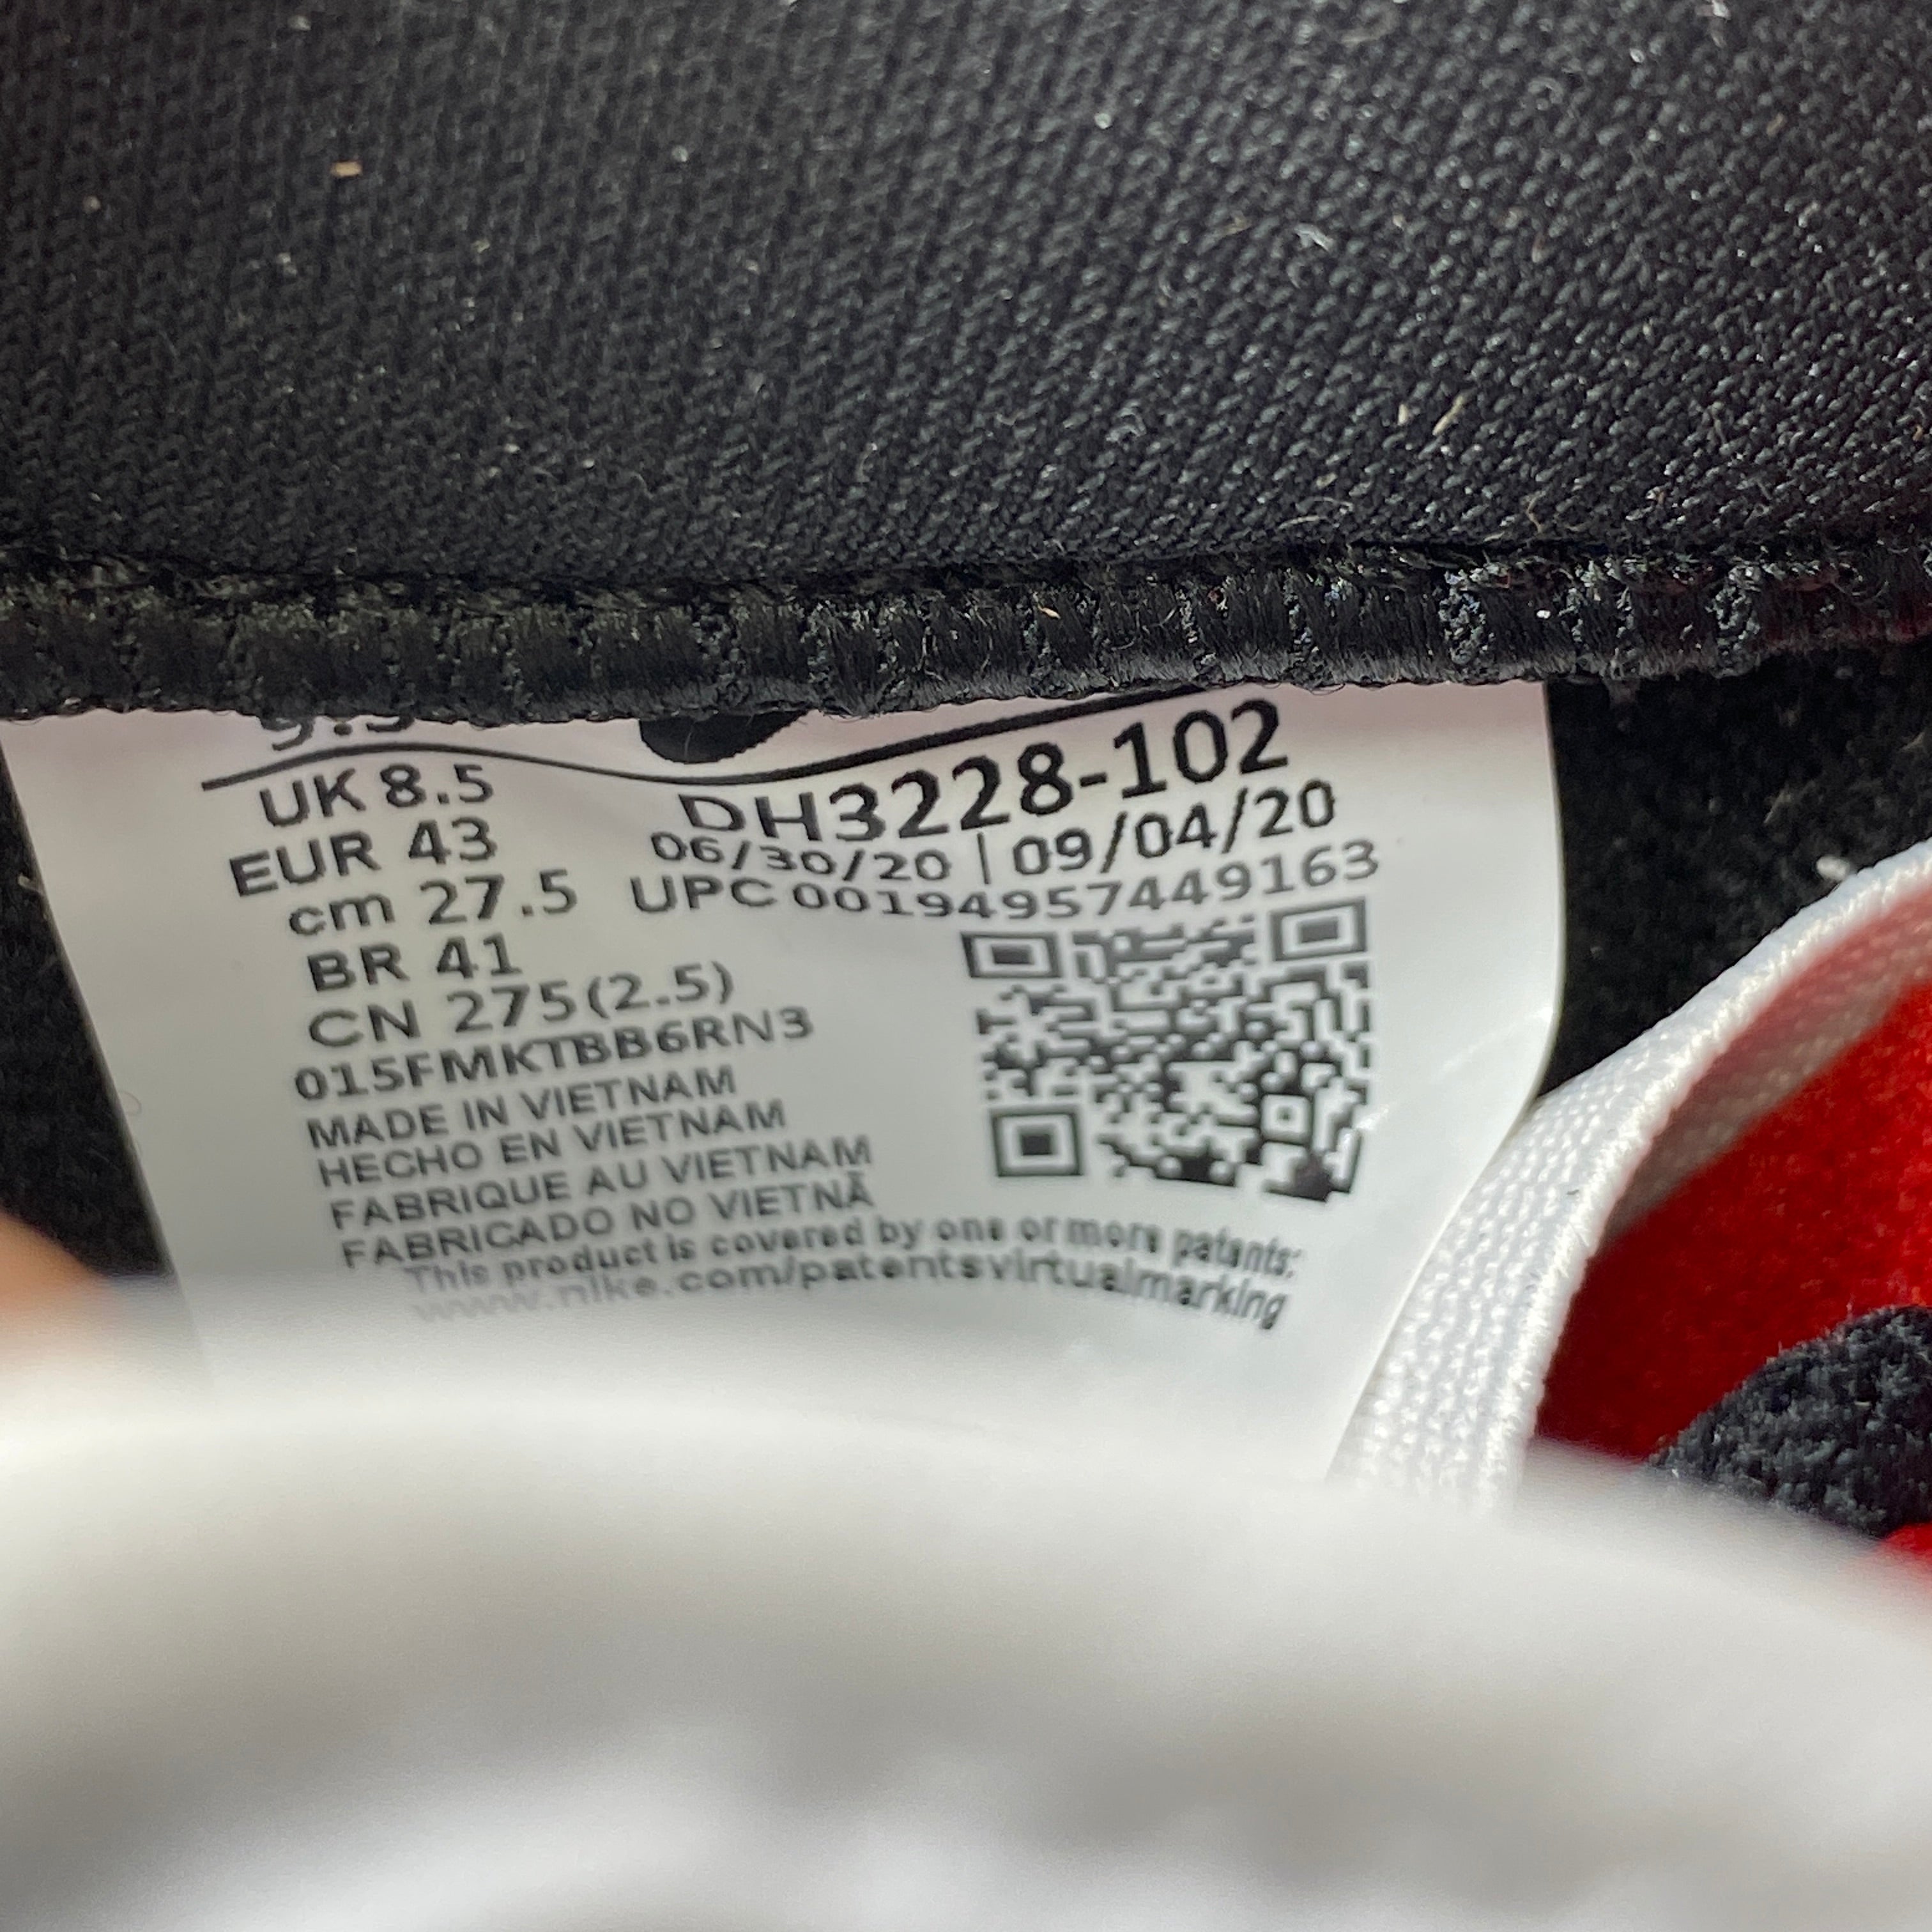 Nike SB Dunk Low OG QS "Supreme Black" 2021 New Size 9.5